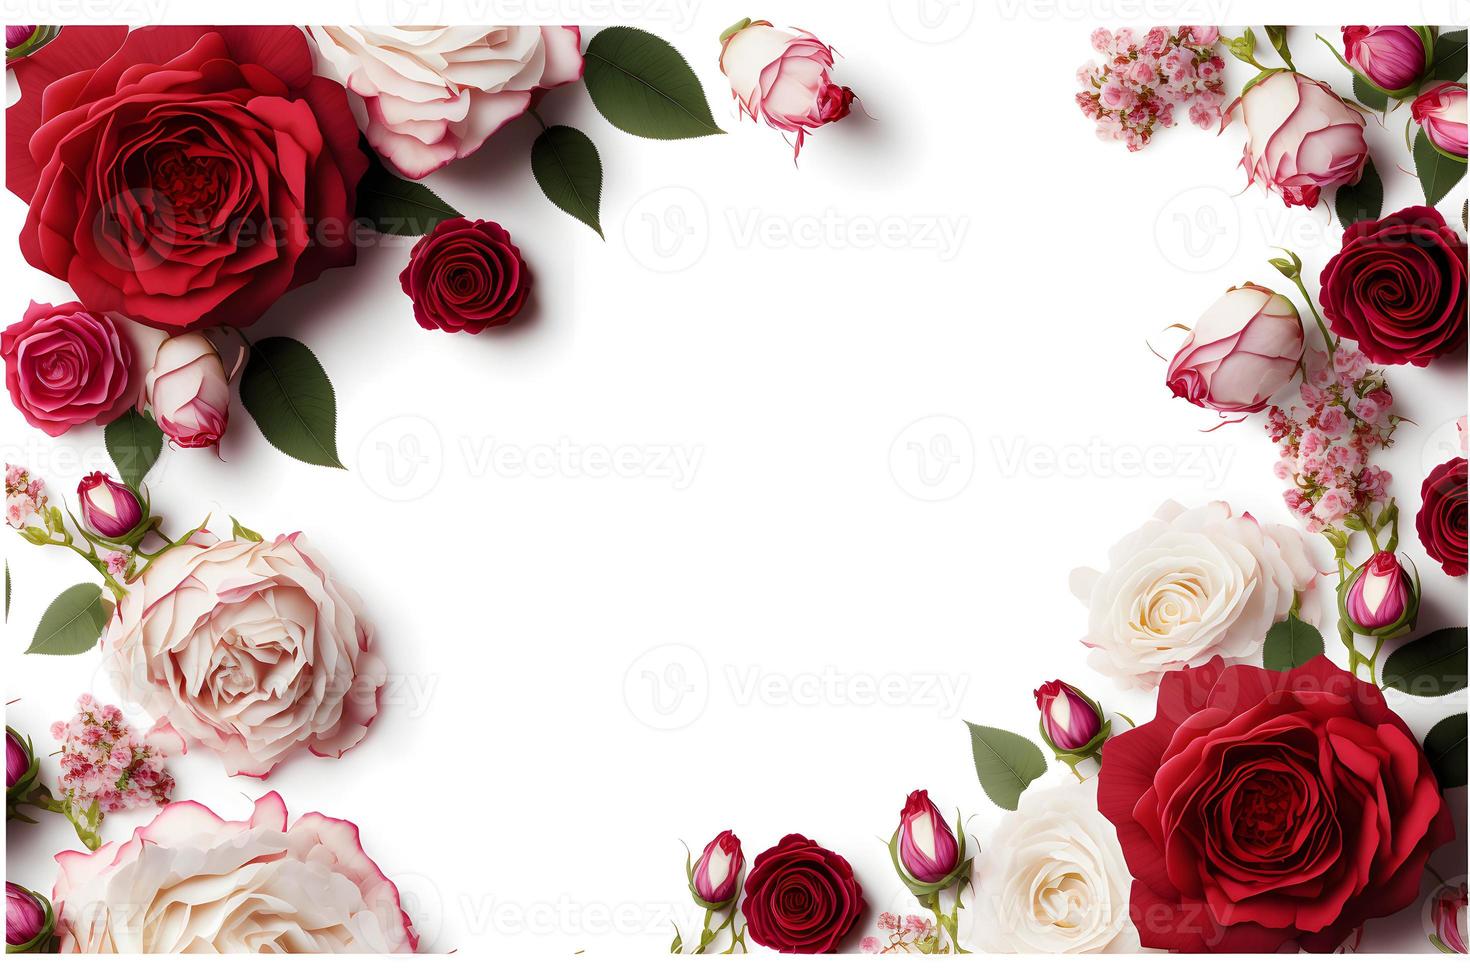 en fantastisk bild terar en röd och rosa reste sig blomma med en tom Plats i de mitten, perfekt för tillsats text eller överlägg grafik. detta Foto är idealisk för använda sig av på social media, webbplatser